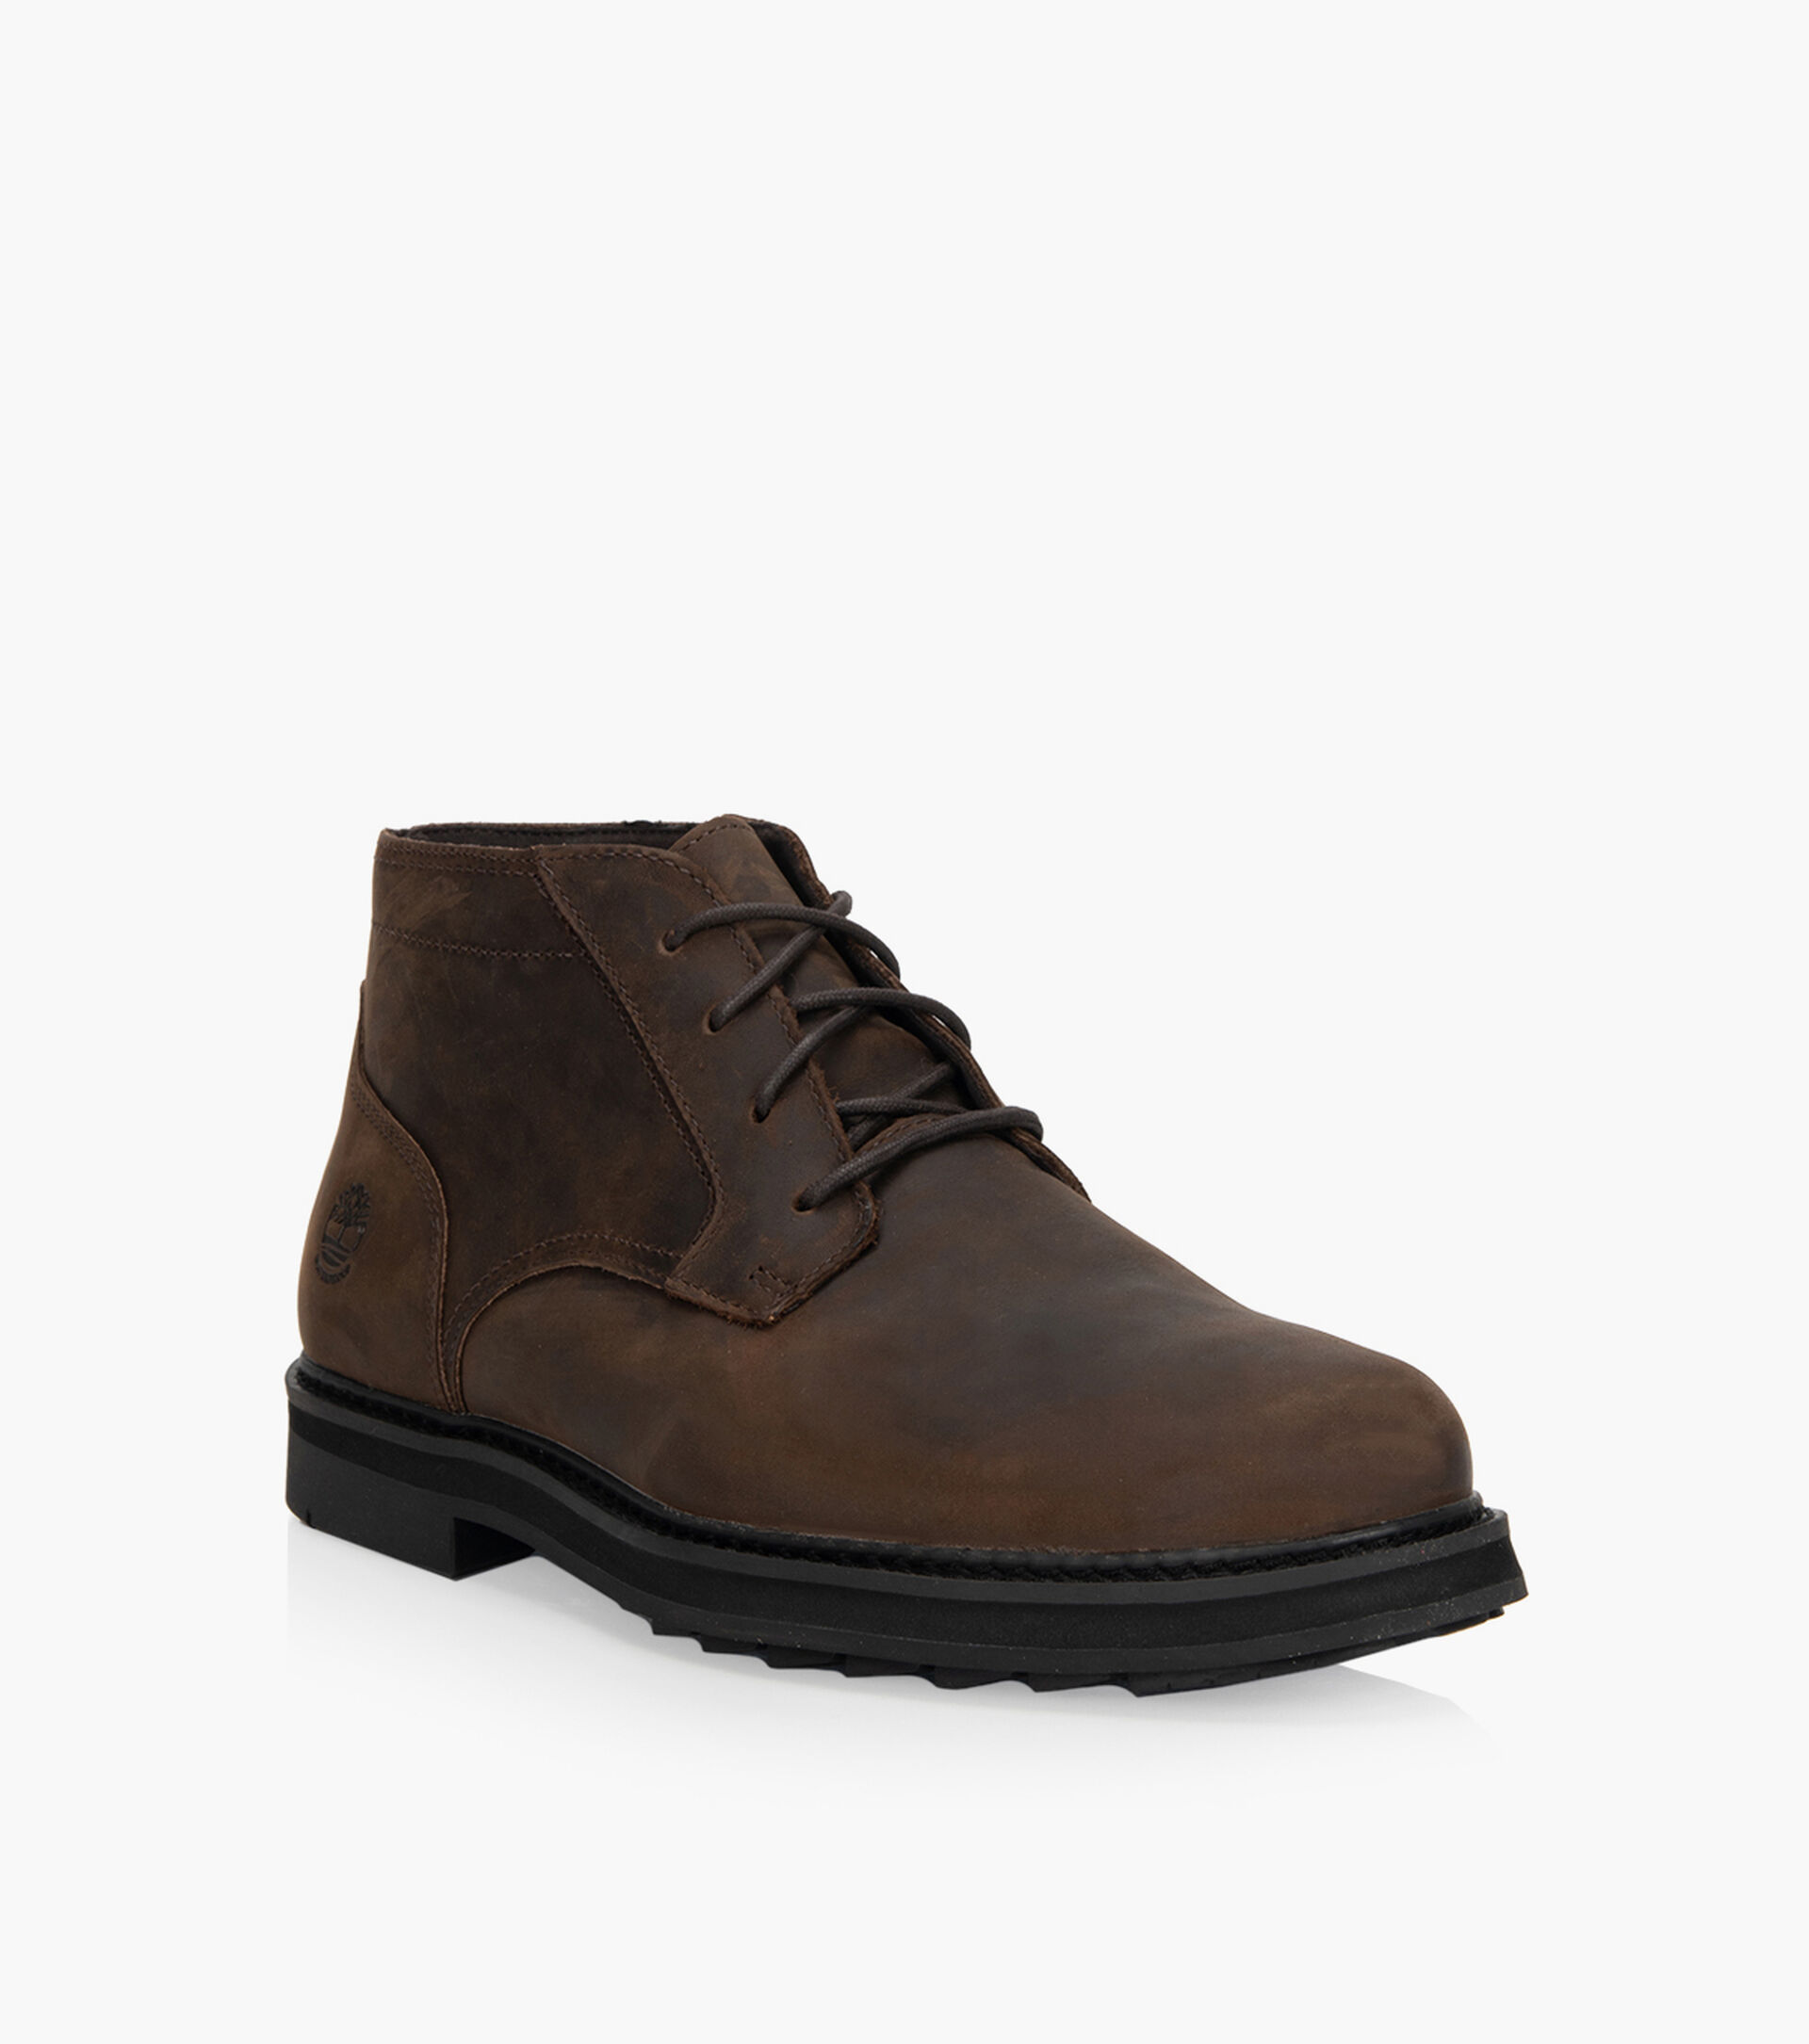 TIMBERLAND SQUALL CANYON WP CHUKKA | Browns Shoes